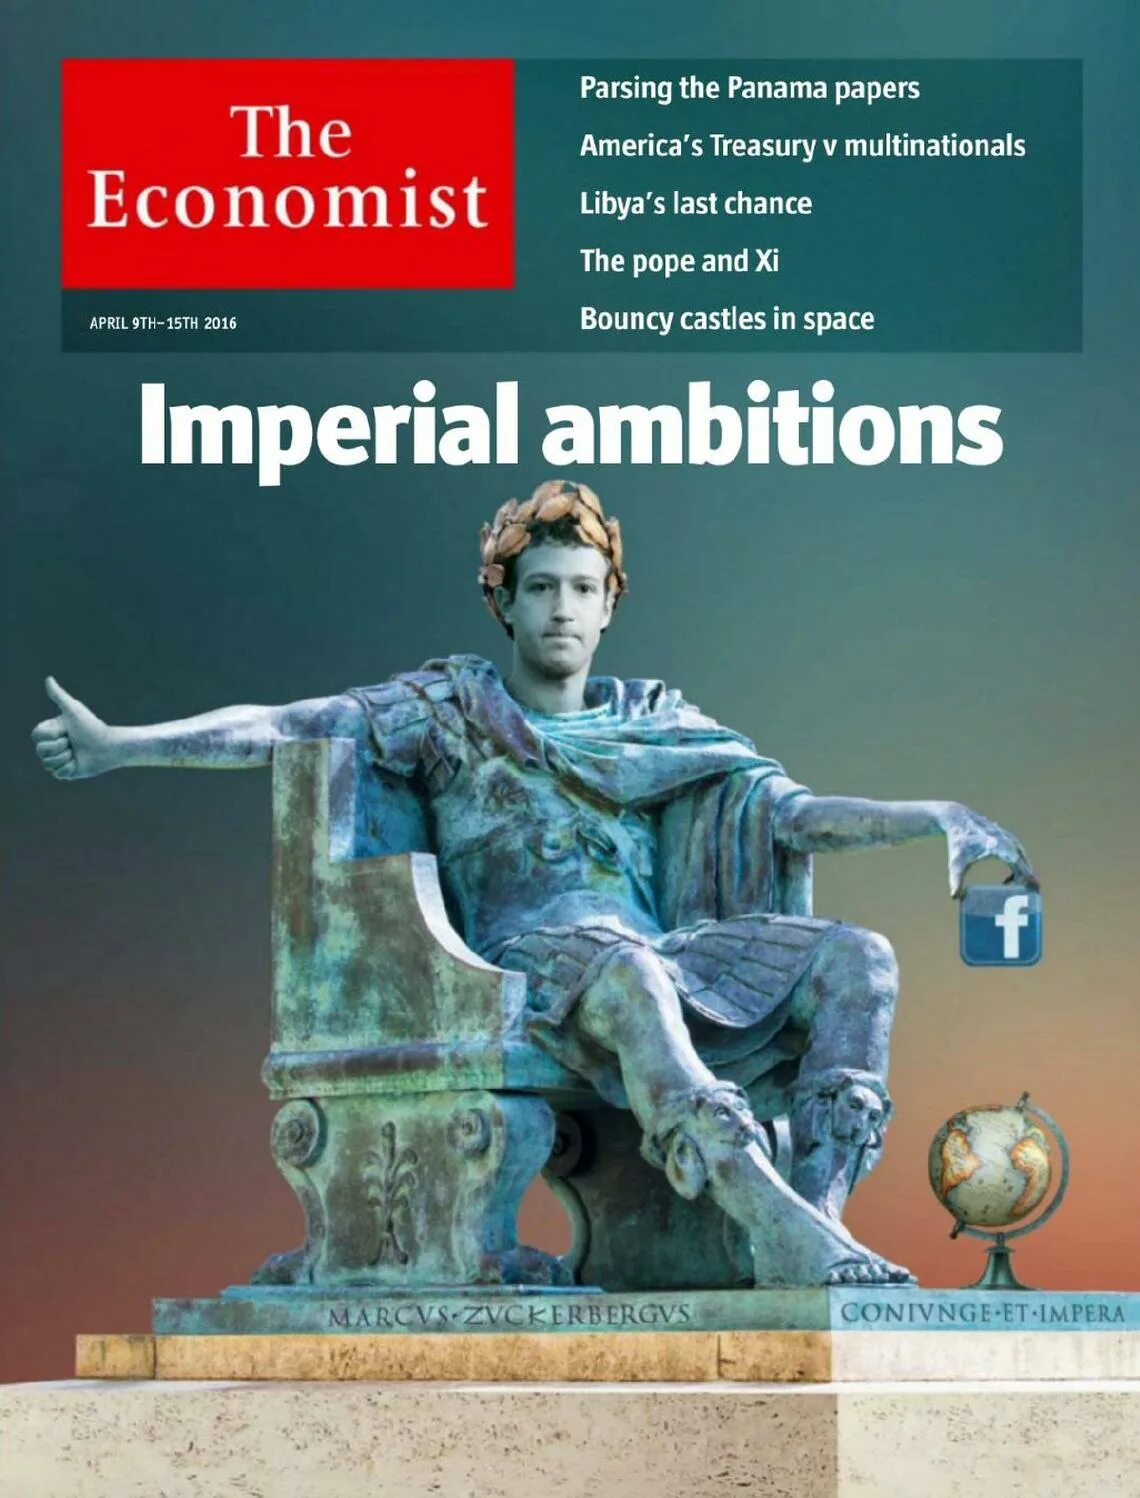 Журнал the Economist. Обложка экономист. The Economist обложка. Обложка журнала зе экономист.